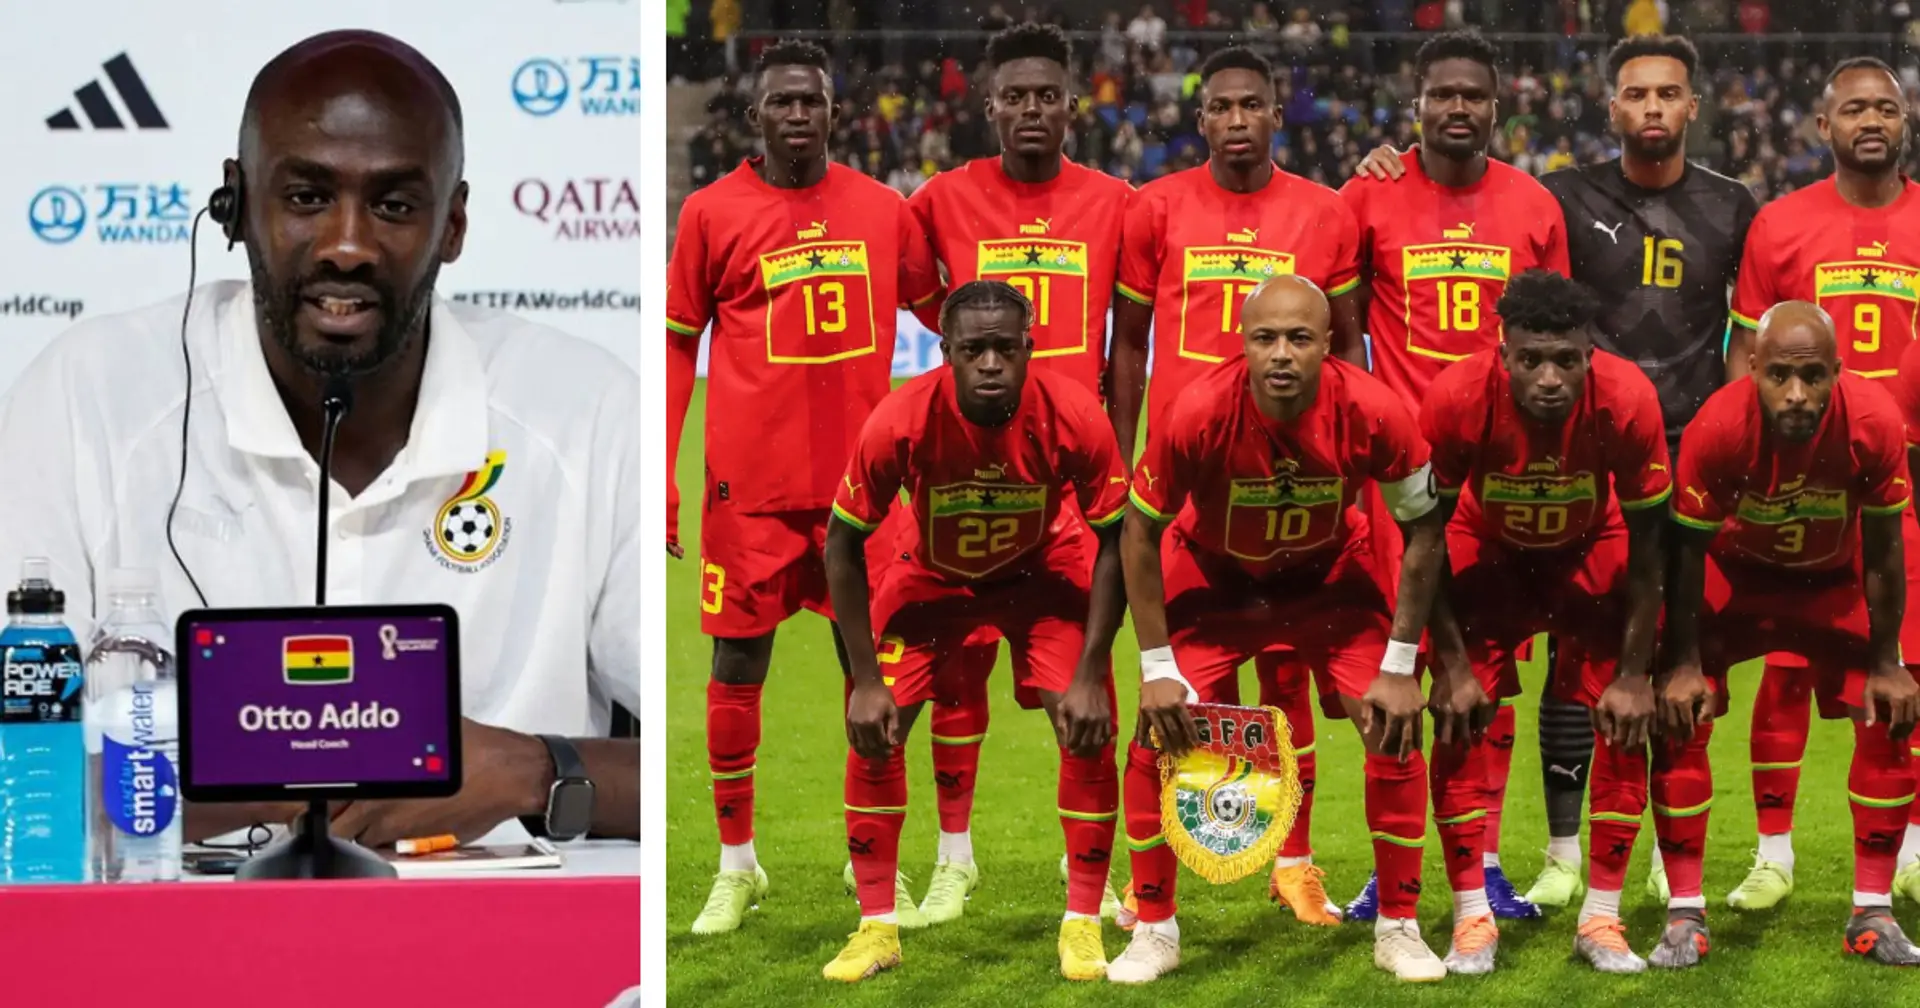 BVB-Talentecoach Addo setzt sich ein klares WM-Ziel mit Ghana: "Wir hoffen, es ins Achtelfinale zu schaffen"